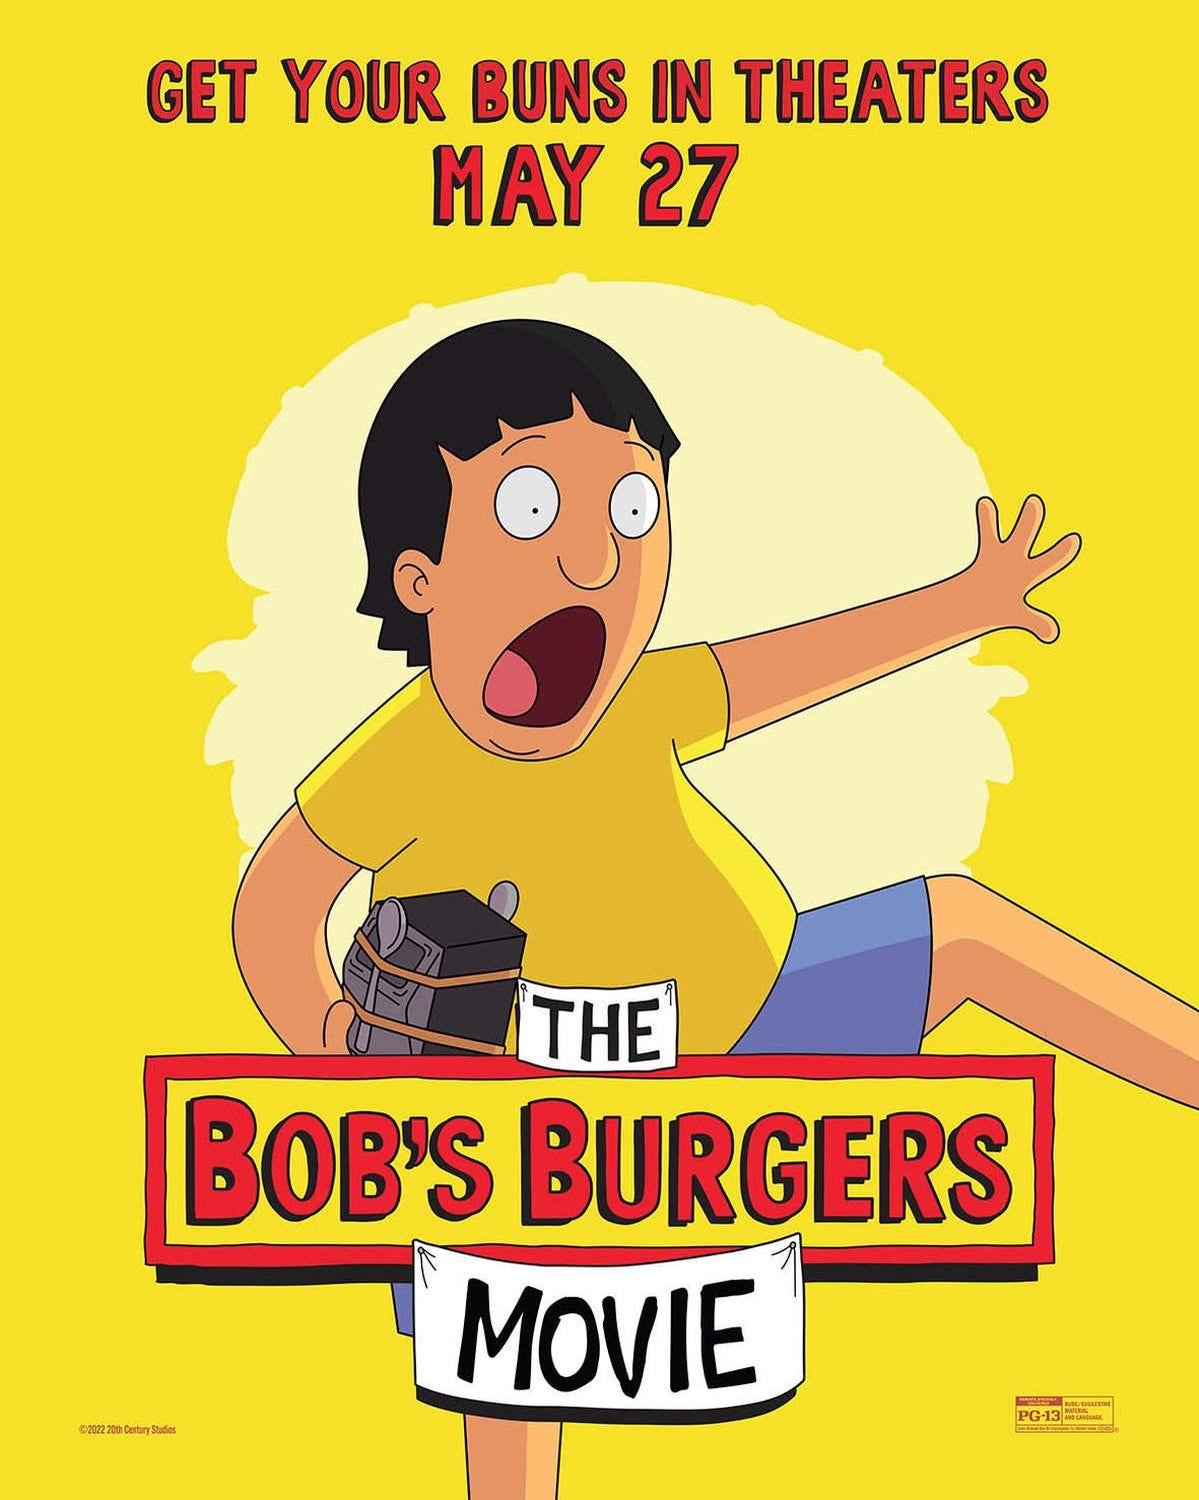 bobs-burgers-movie-posters-007.jpg